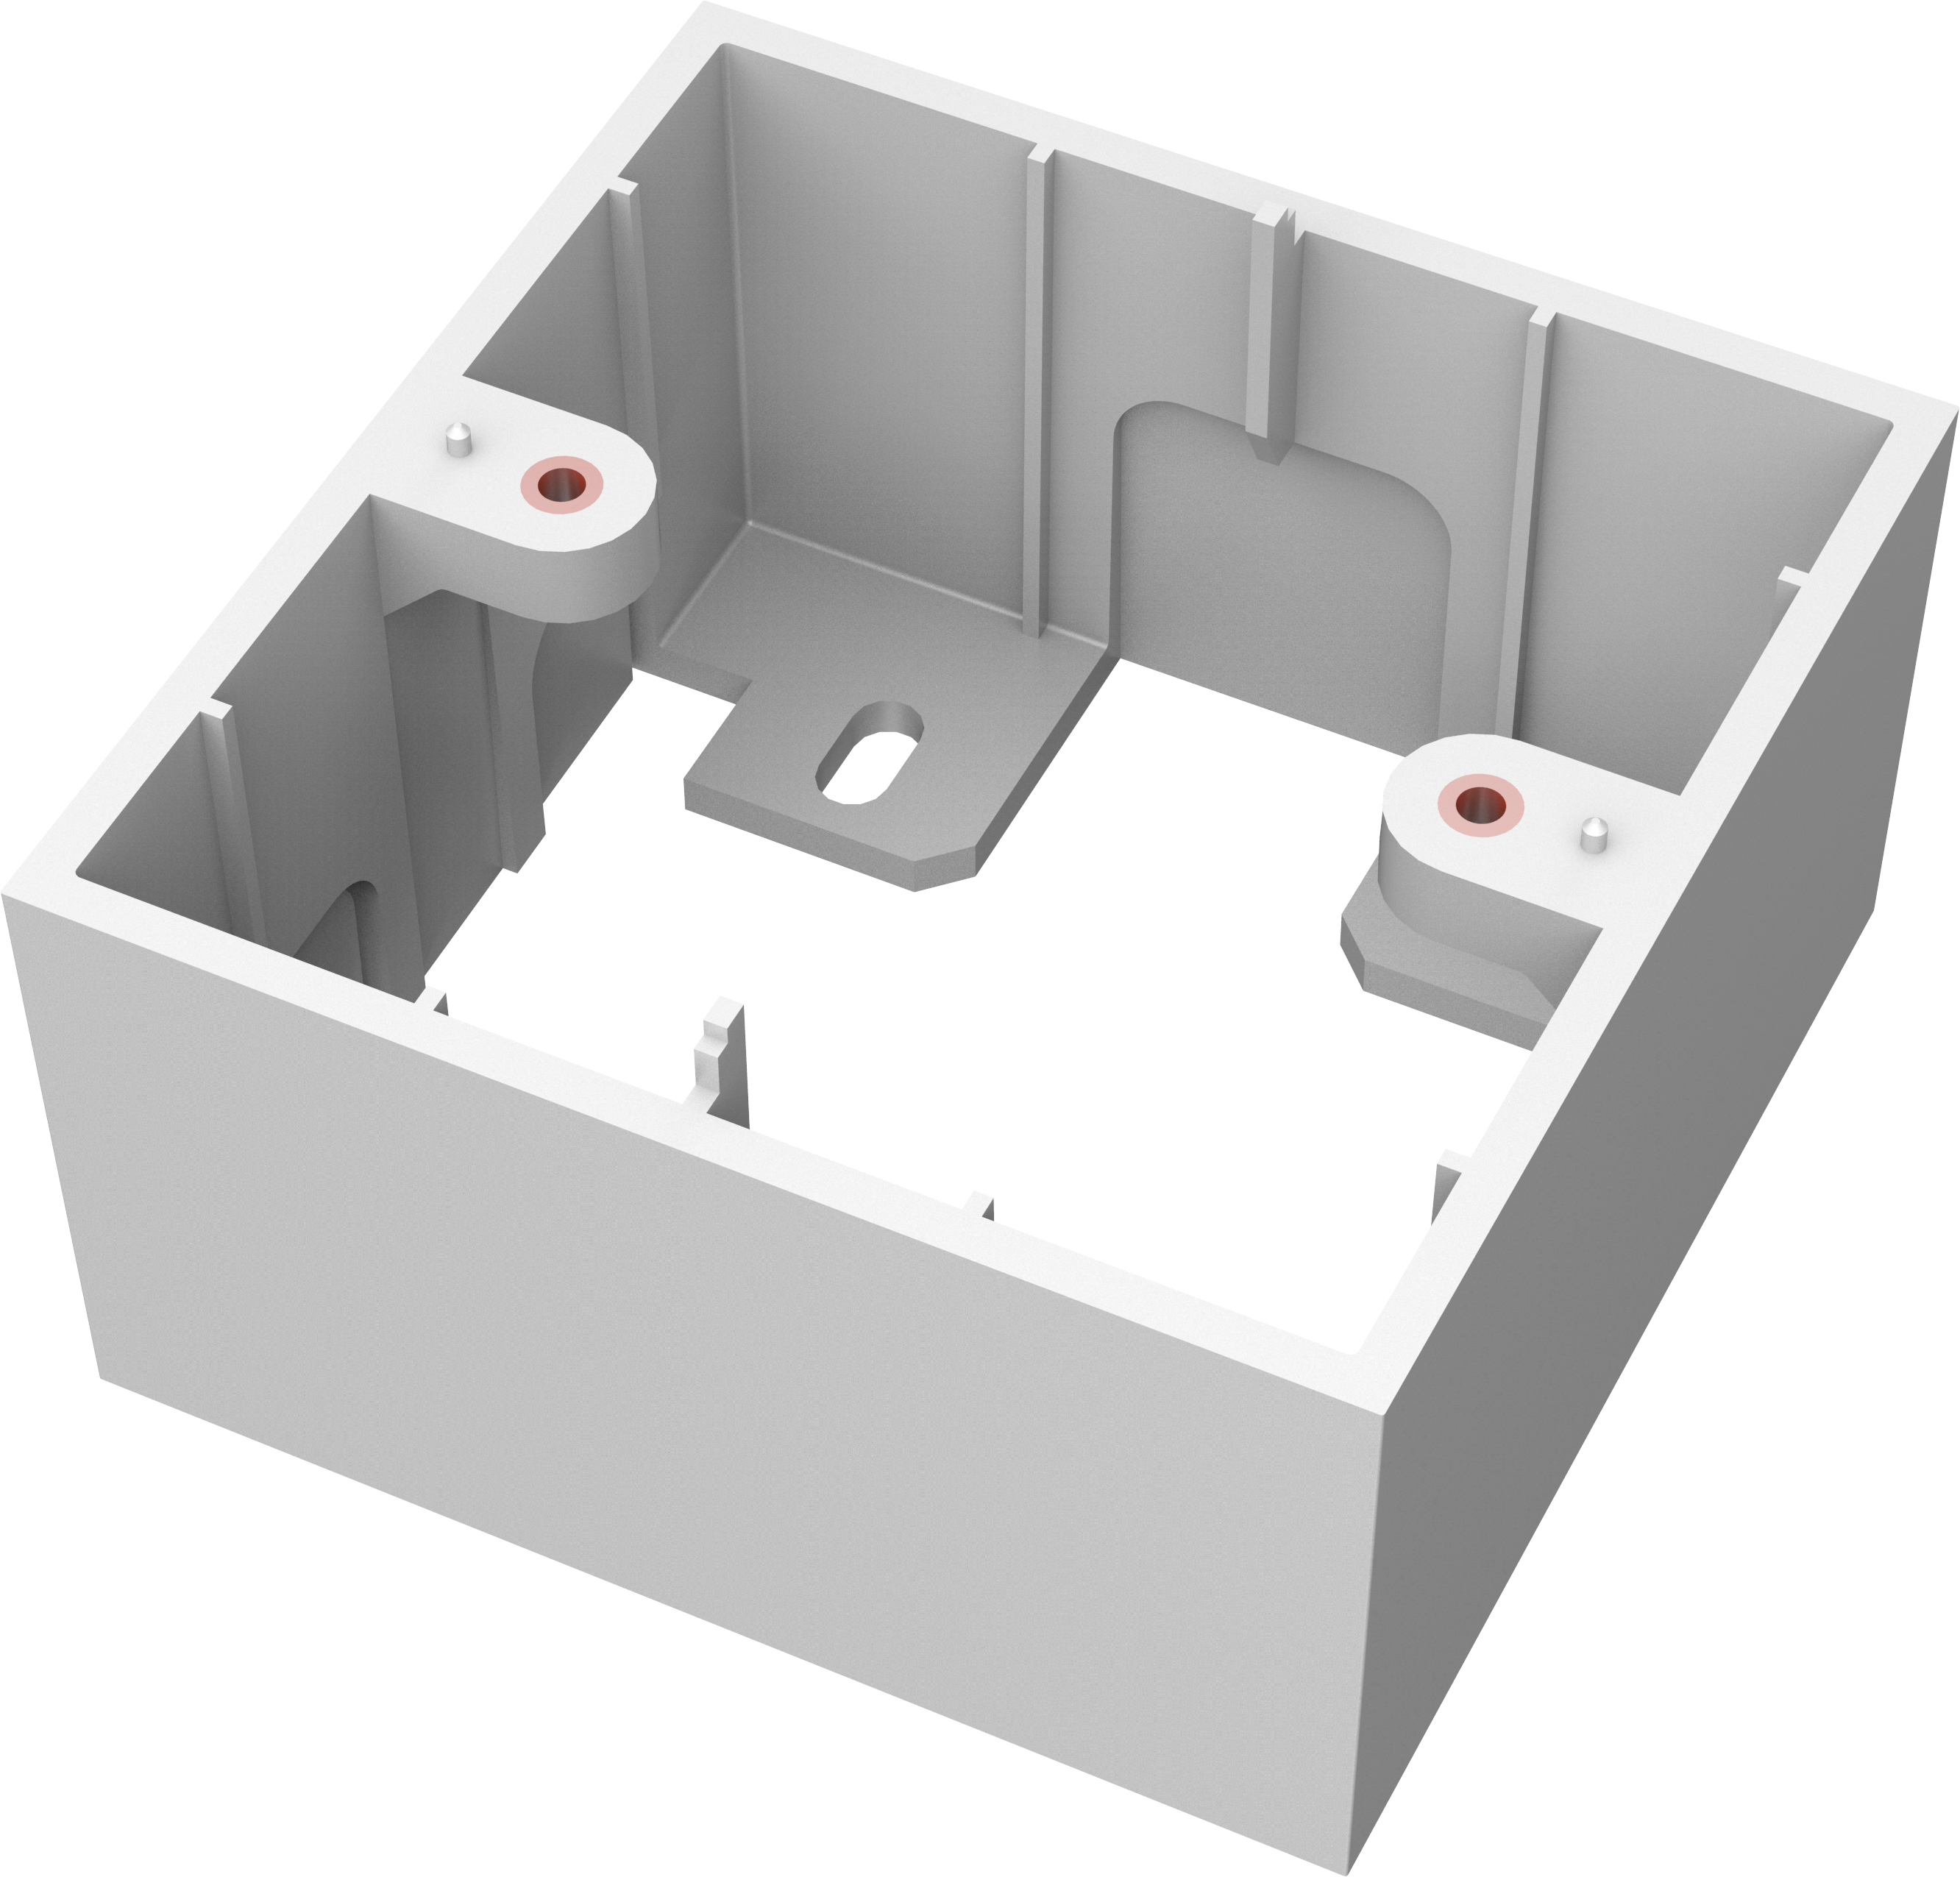 An image showing TC3 Caixa de derivação com ficha simples, para montagem à superfície, modelo inglês